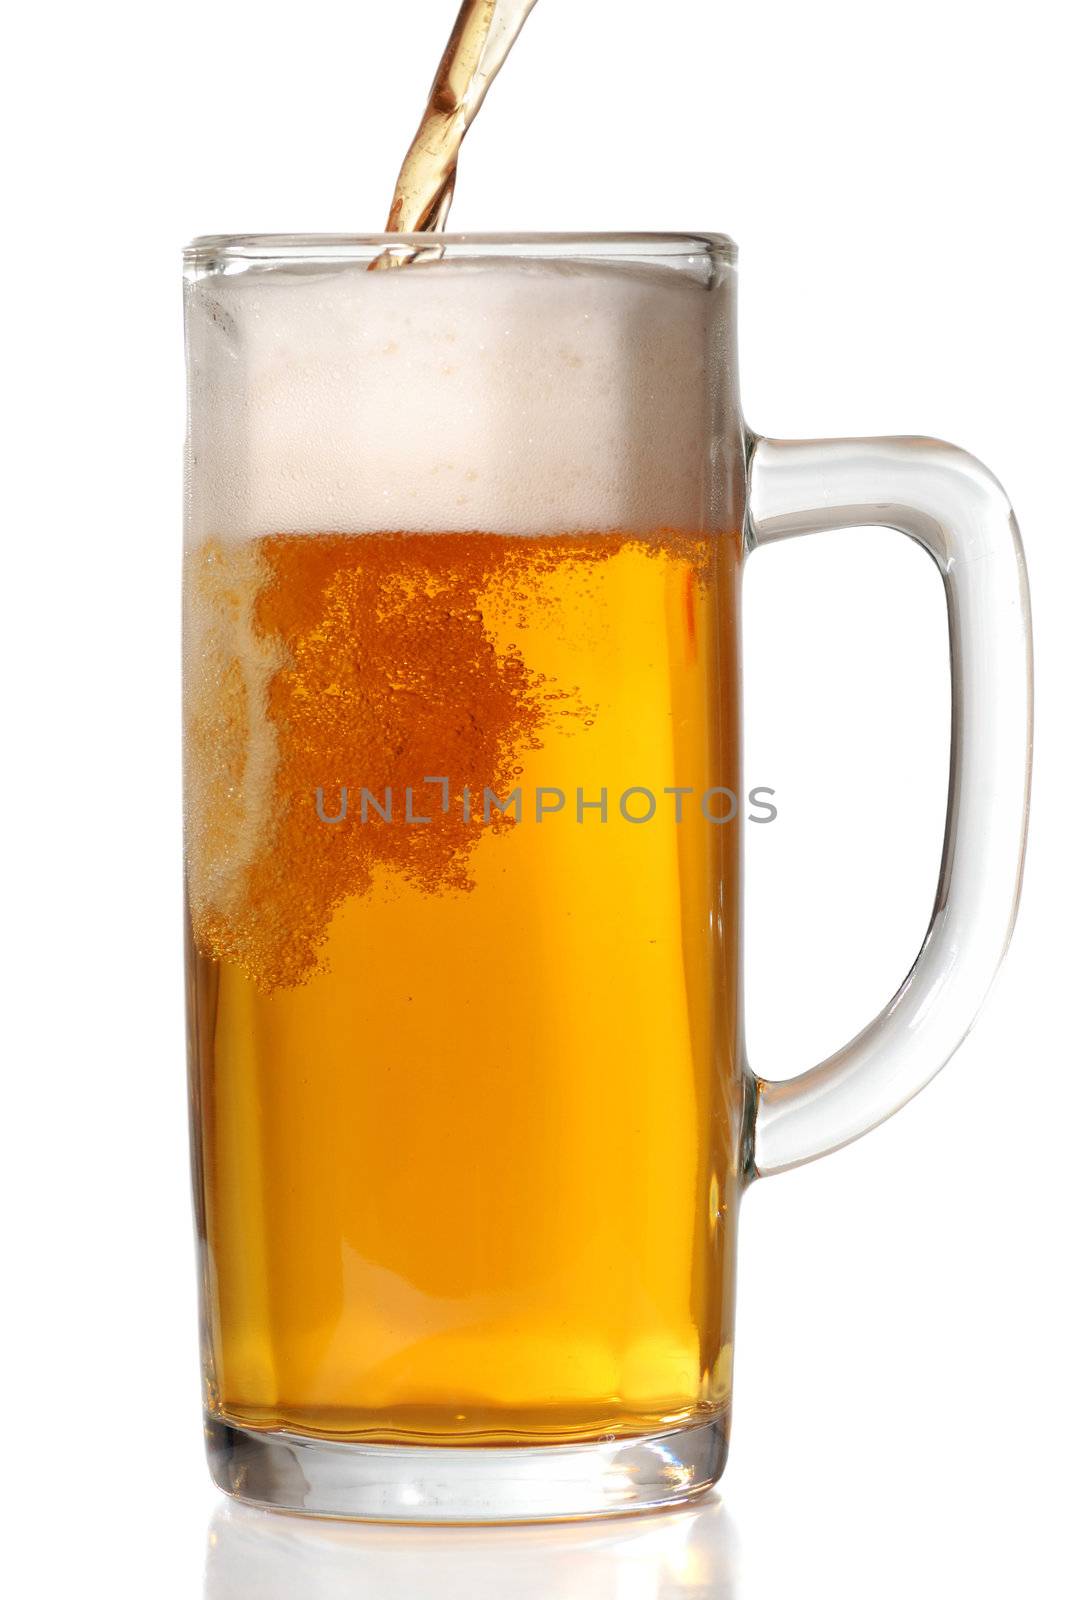 Beer mug by haveseen